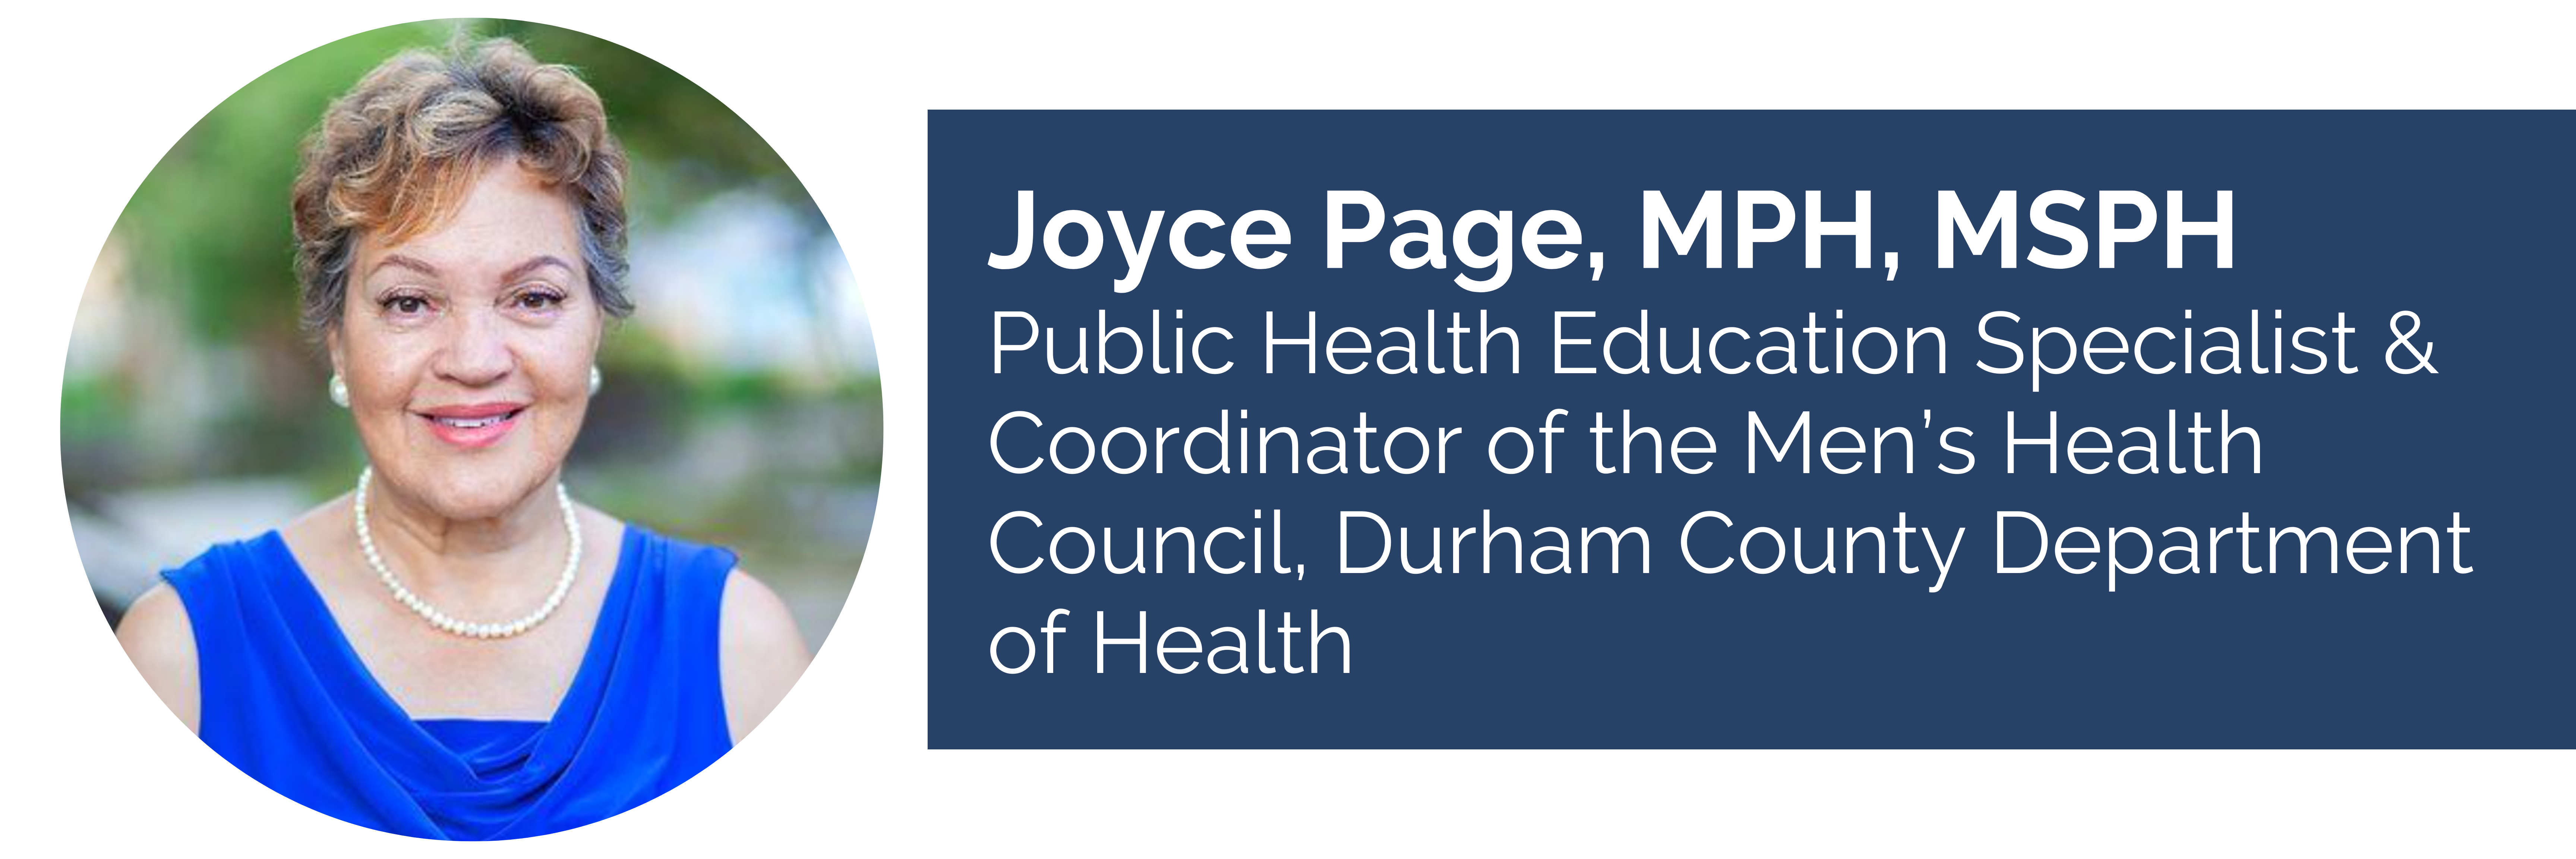 Joyce Page speaker headshot